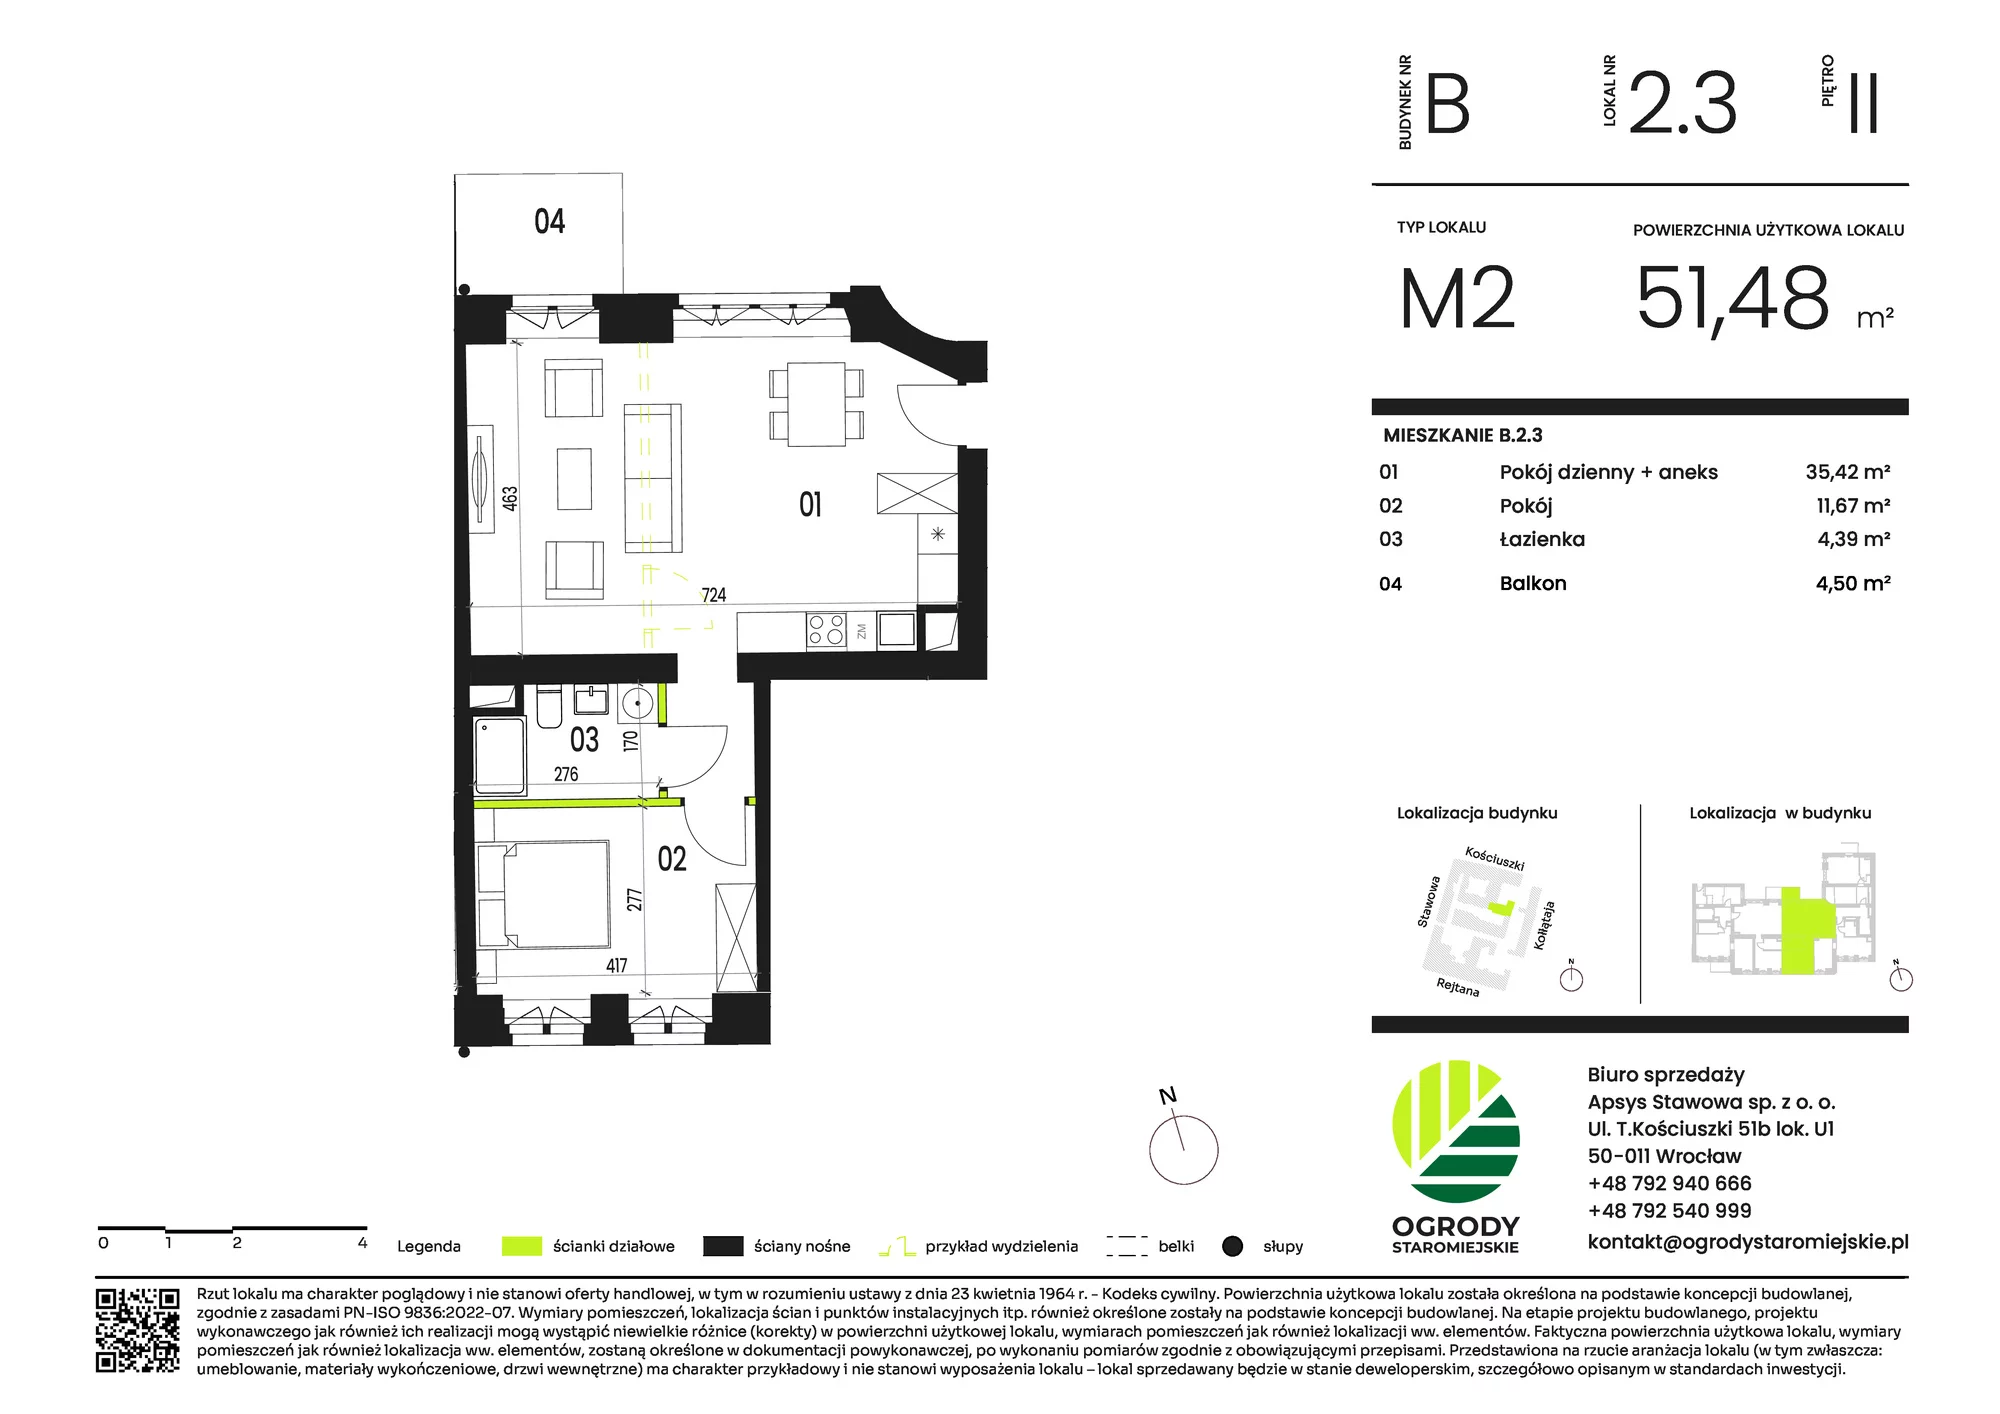 Mieszkanie 52,90 m², piętro 2, oferta nr B.2.3, Ogrody Staromiejskie, Wrocław, Przedmieście Świdnickie, ul. Stawowa 10